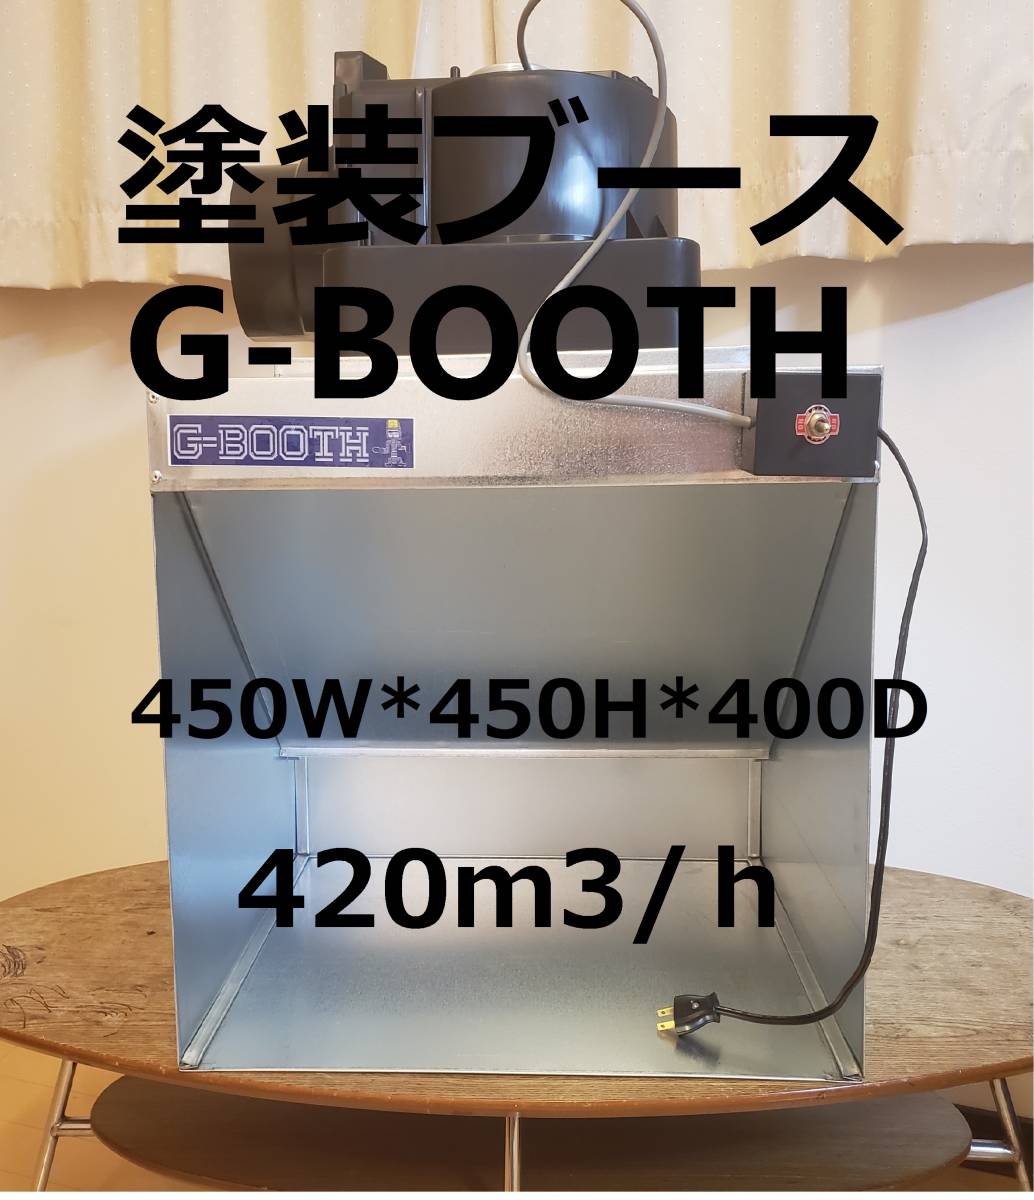 セール品 G-Booth 塗装ブース 実用新案登録モデル 大風量低騒音 最大